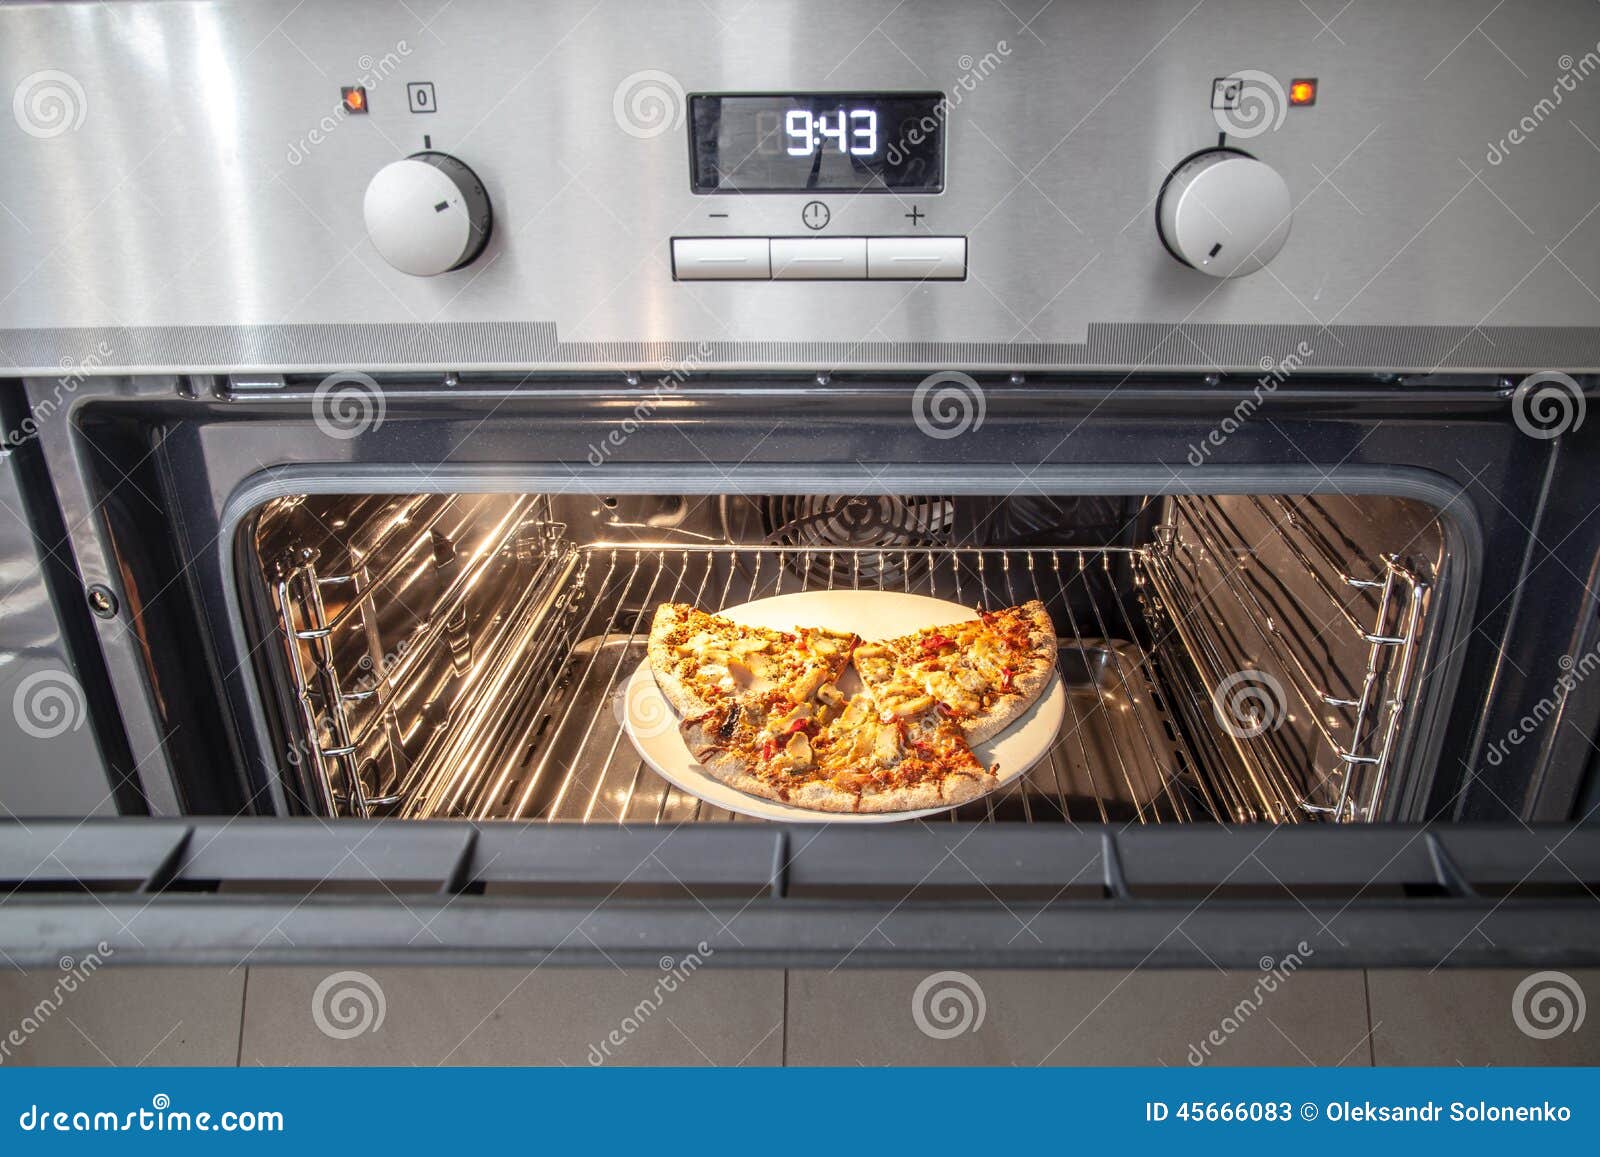 режим пицца в духовке что это такое фото 72